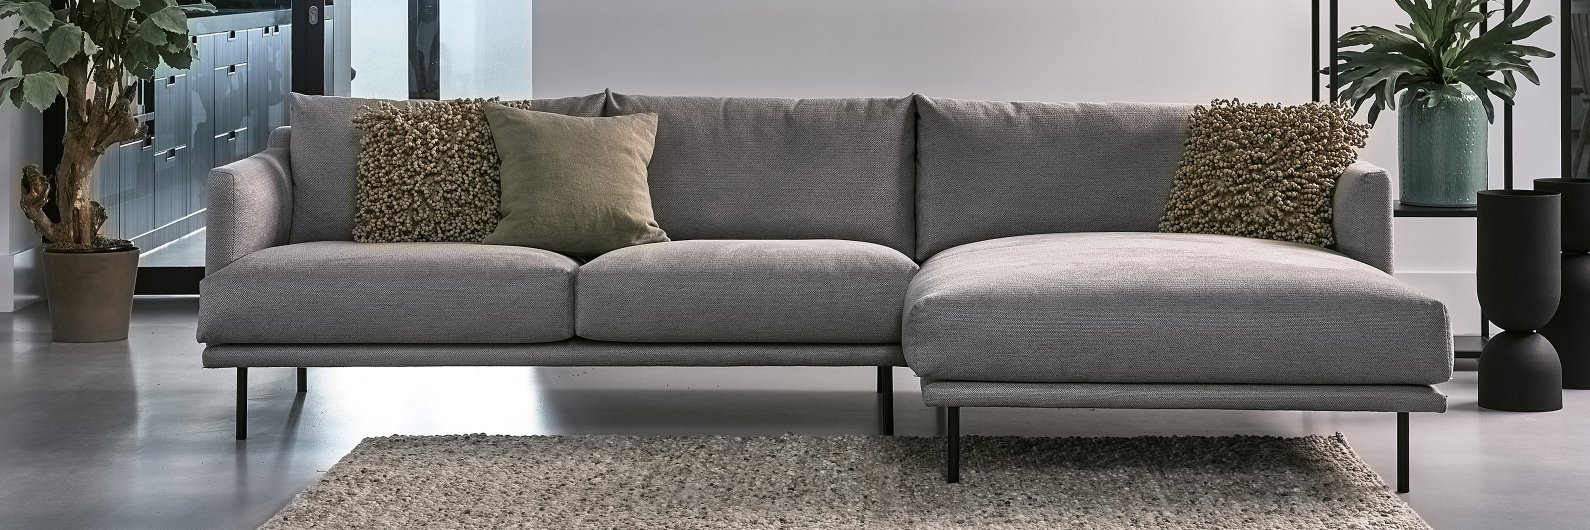 Easy Sofa Modelle Möbel Letz Ihr Einrichtungsexperte